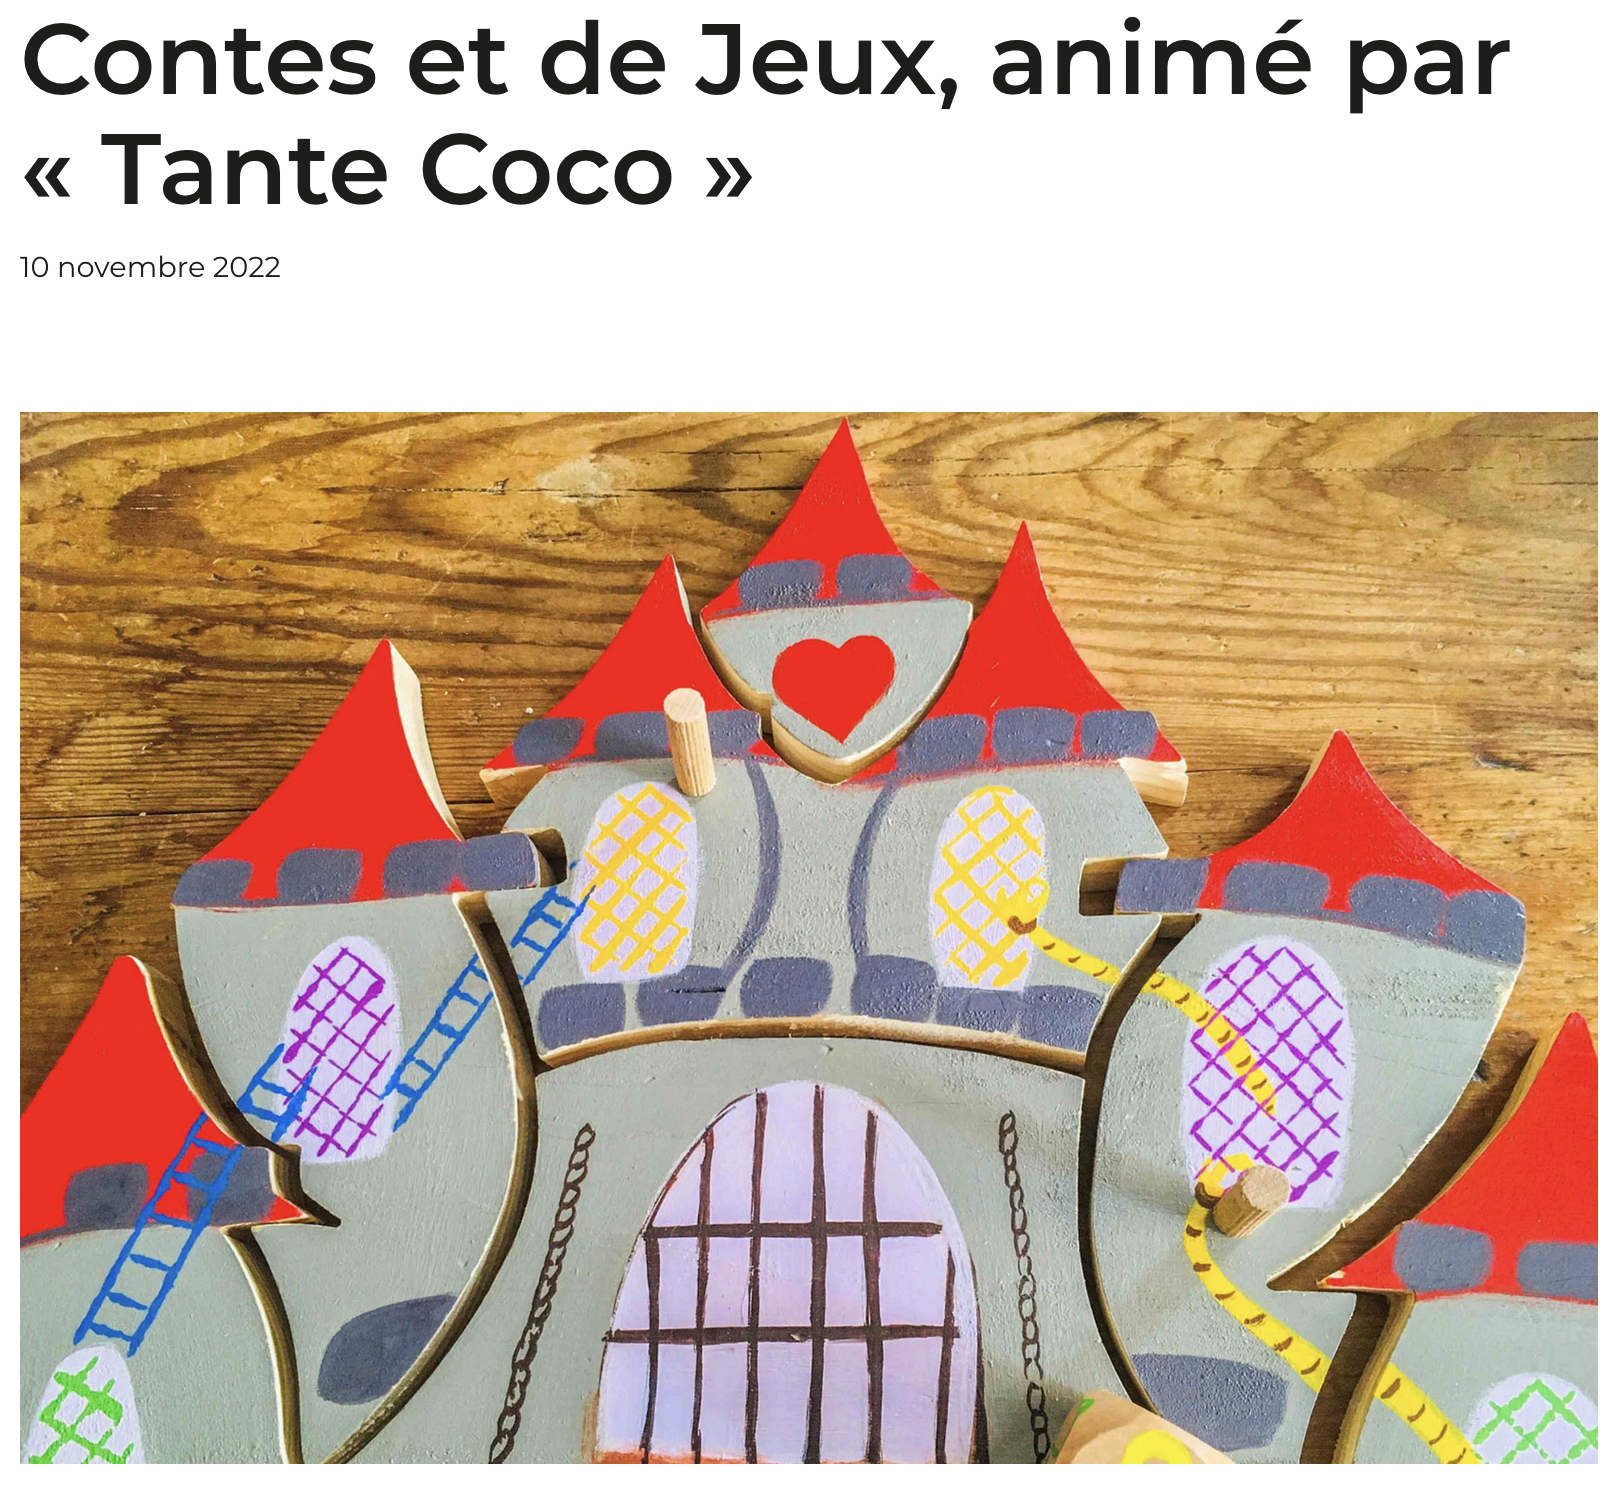 Contes et jeux, animé par "tante Coco"